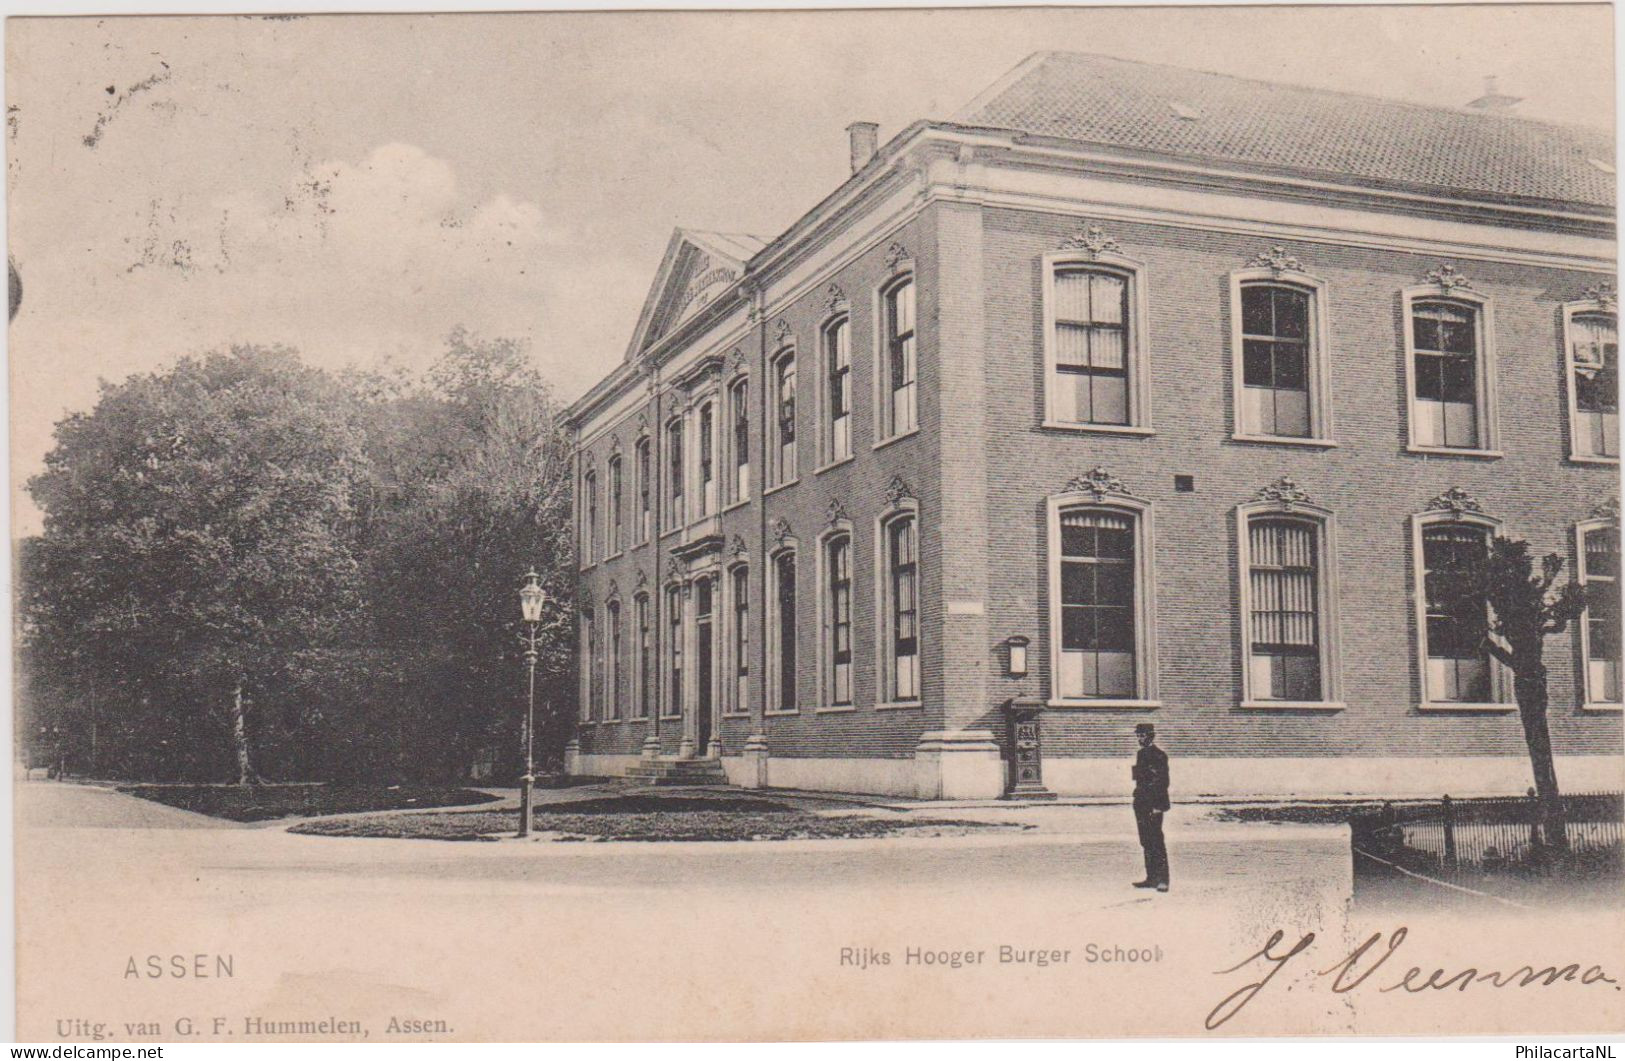 Assen - Rijks Hooger Burger School - 1905 - Assen